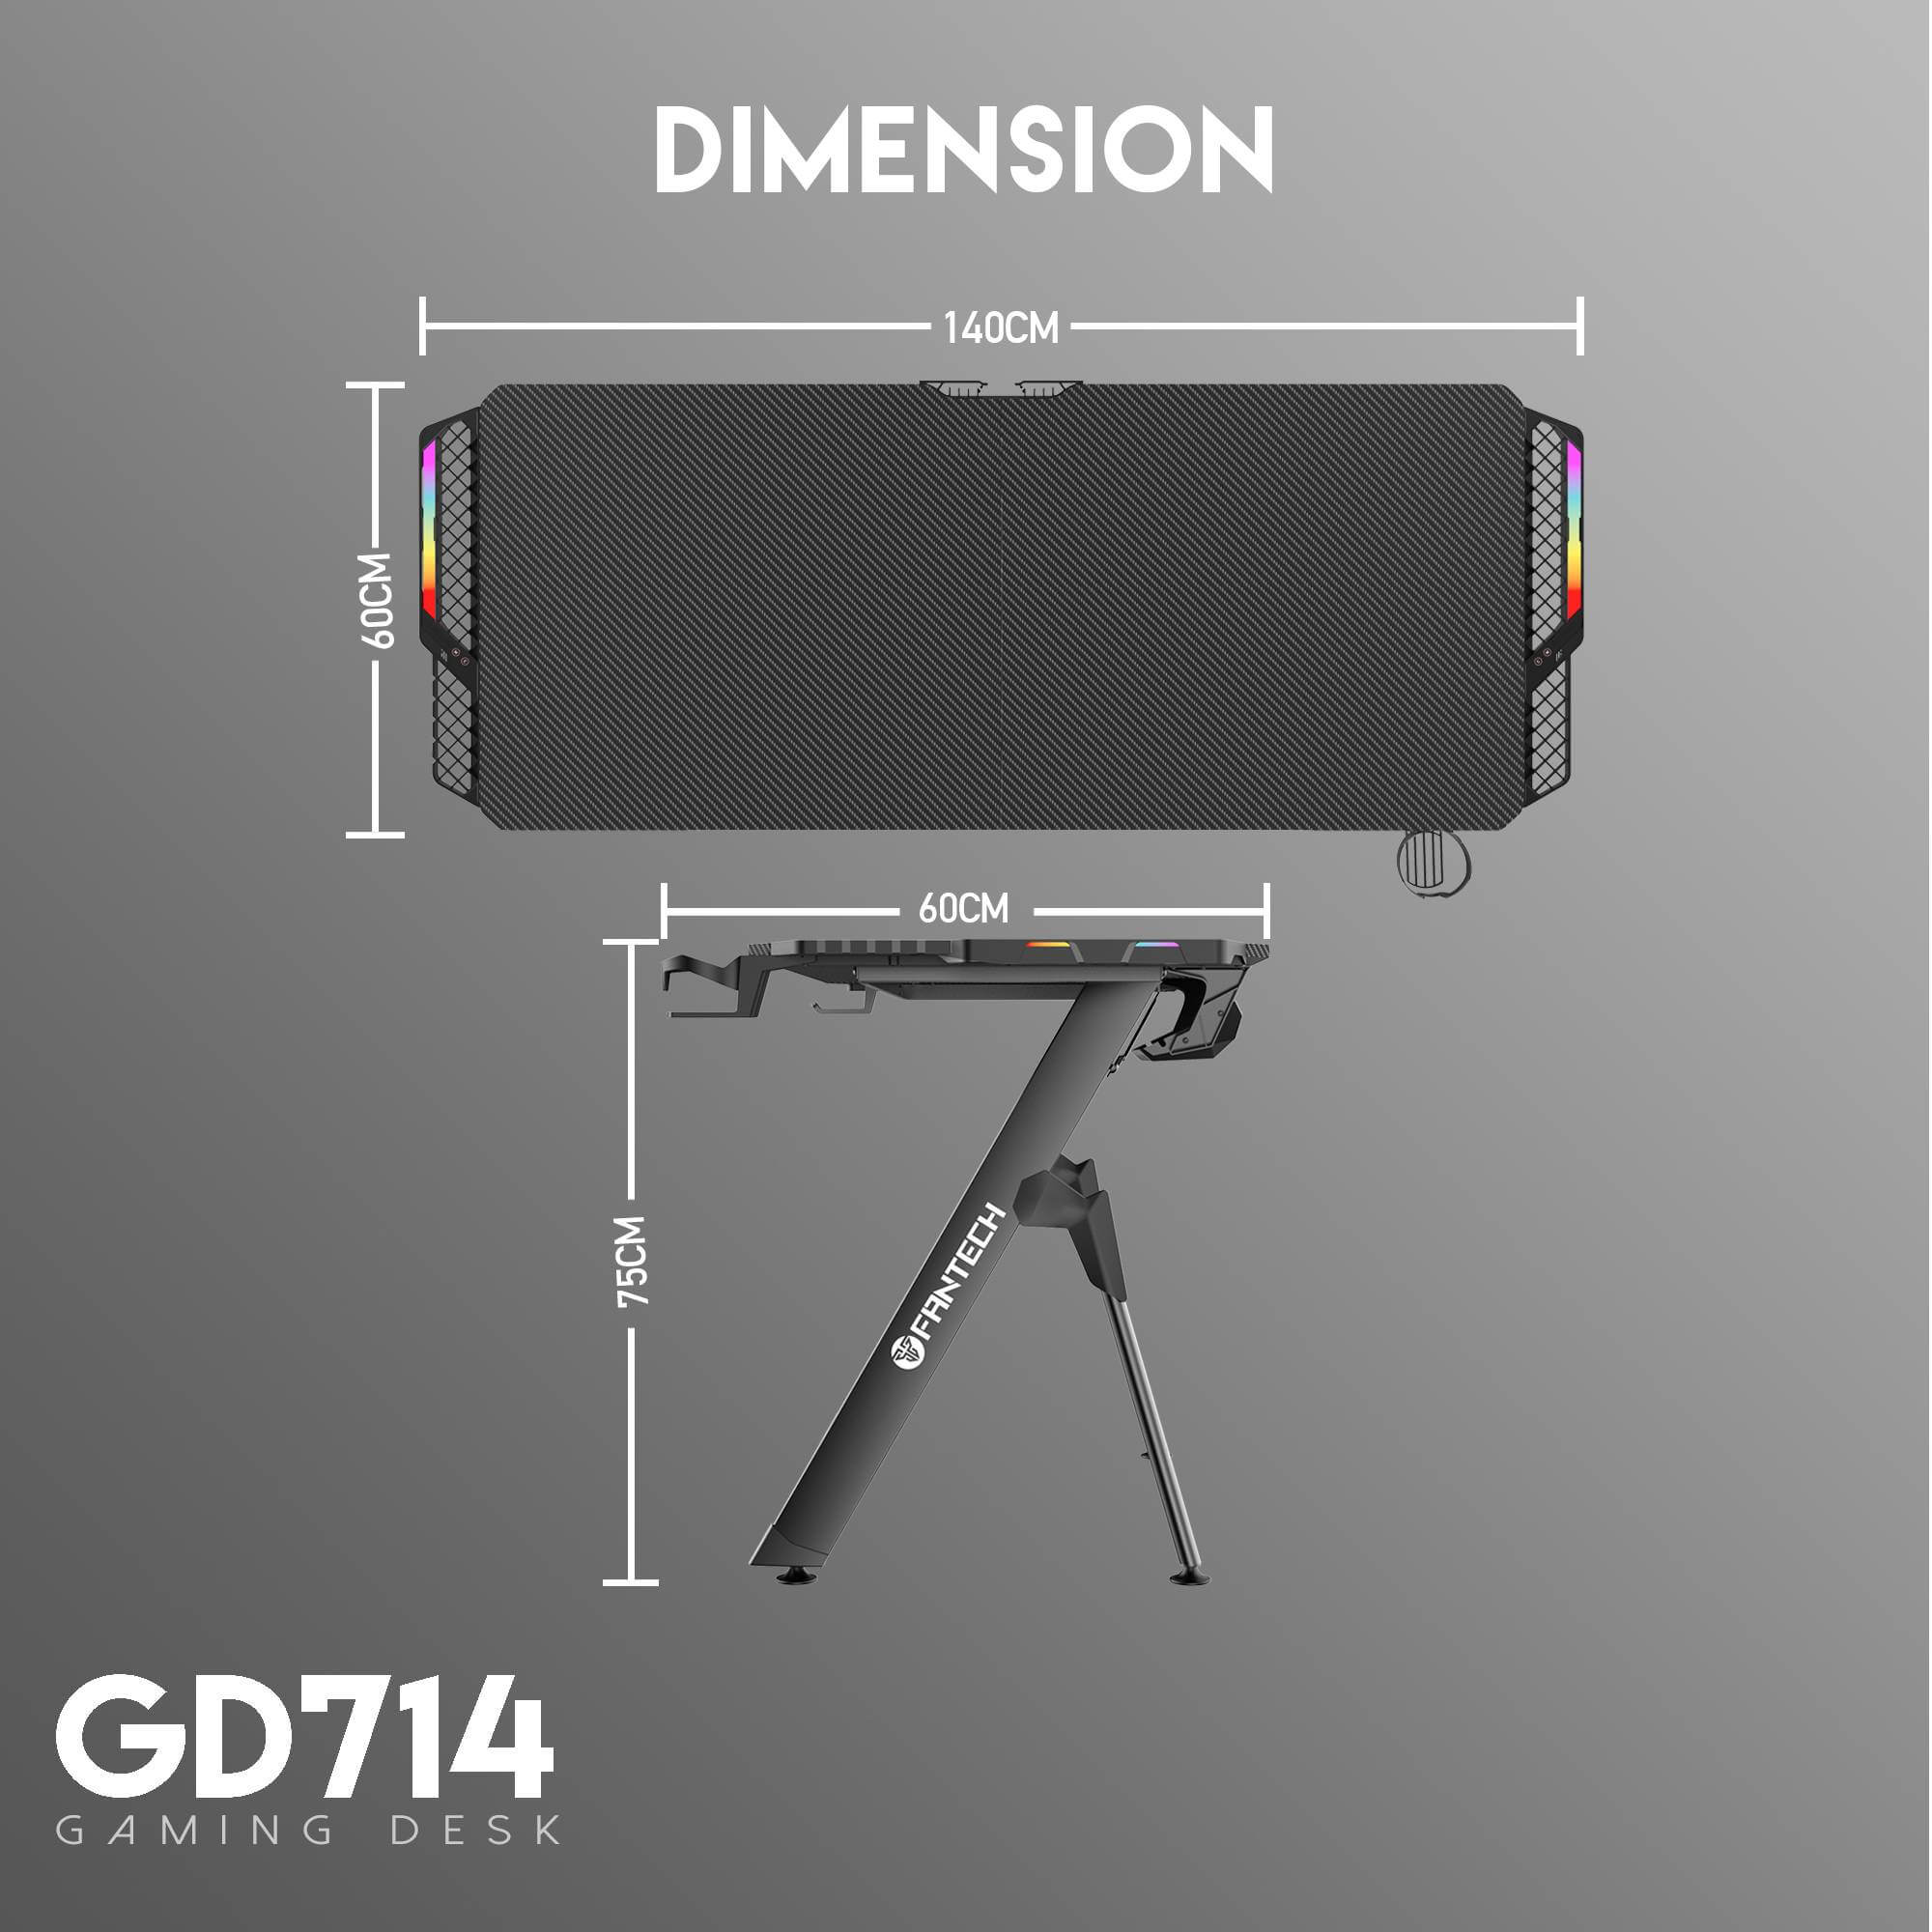 FANTECH GD714 Dimension